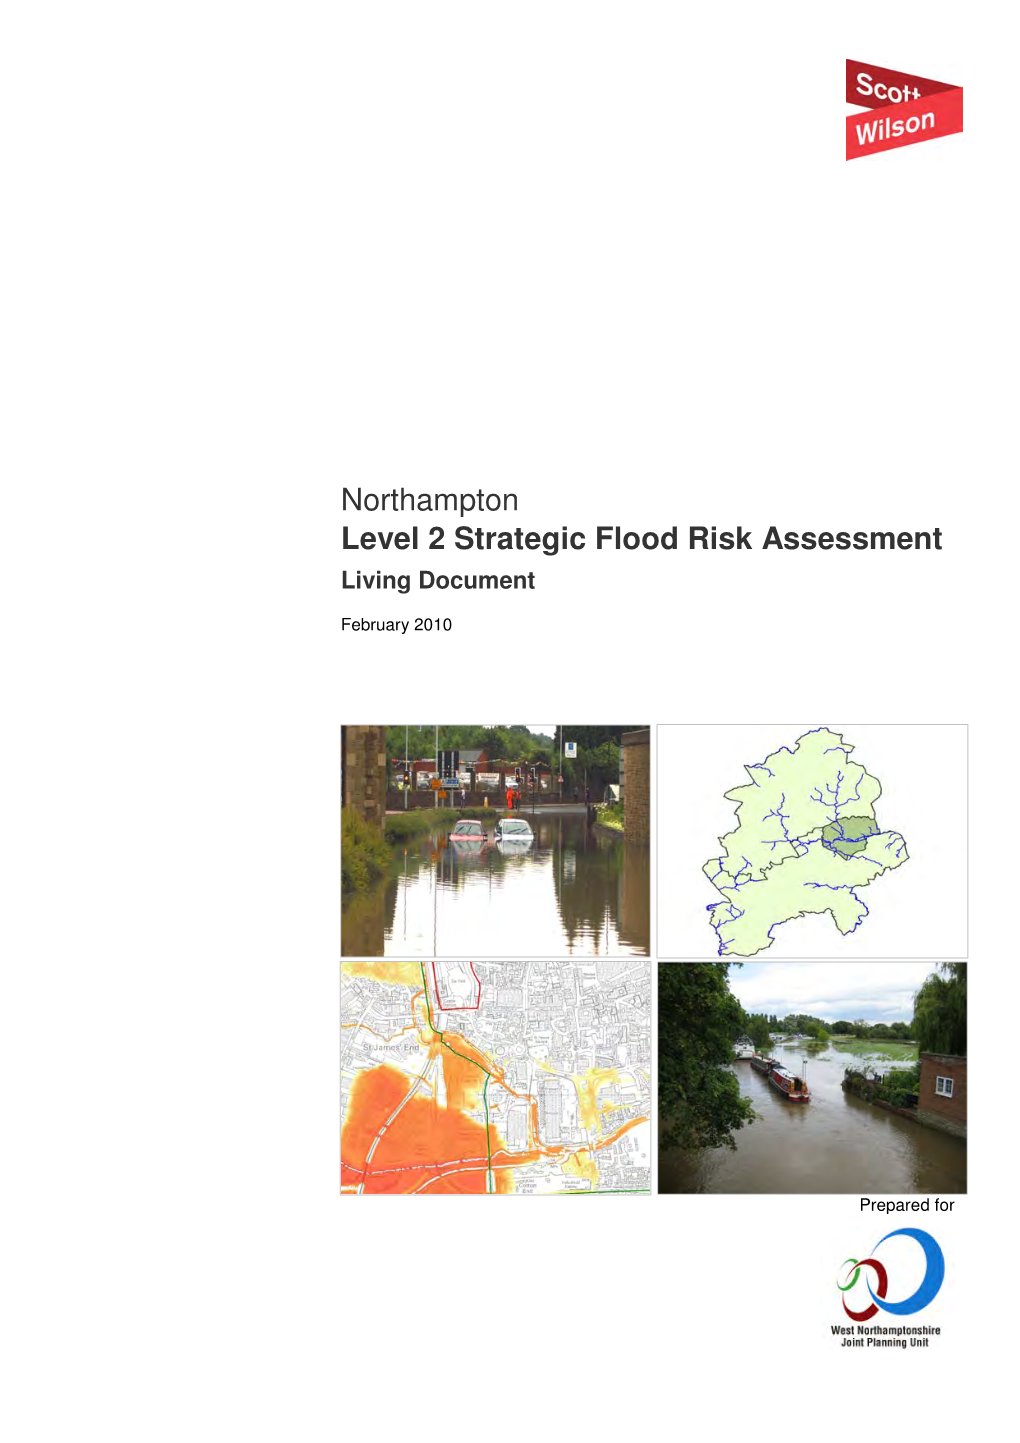 Northampton Level 2 Strategic Flood Risk Assessment Living Document